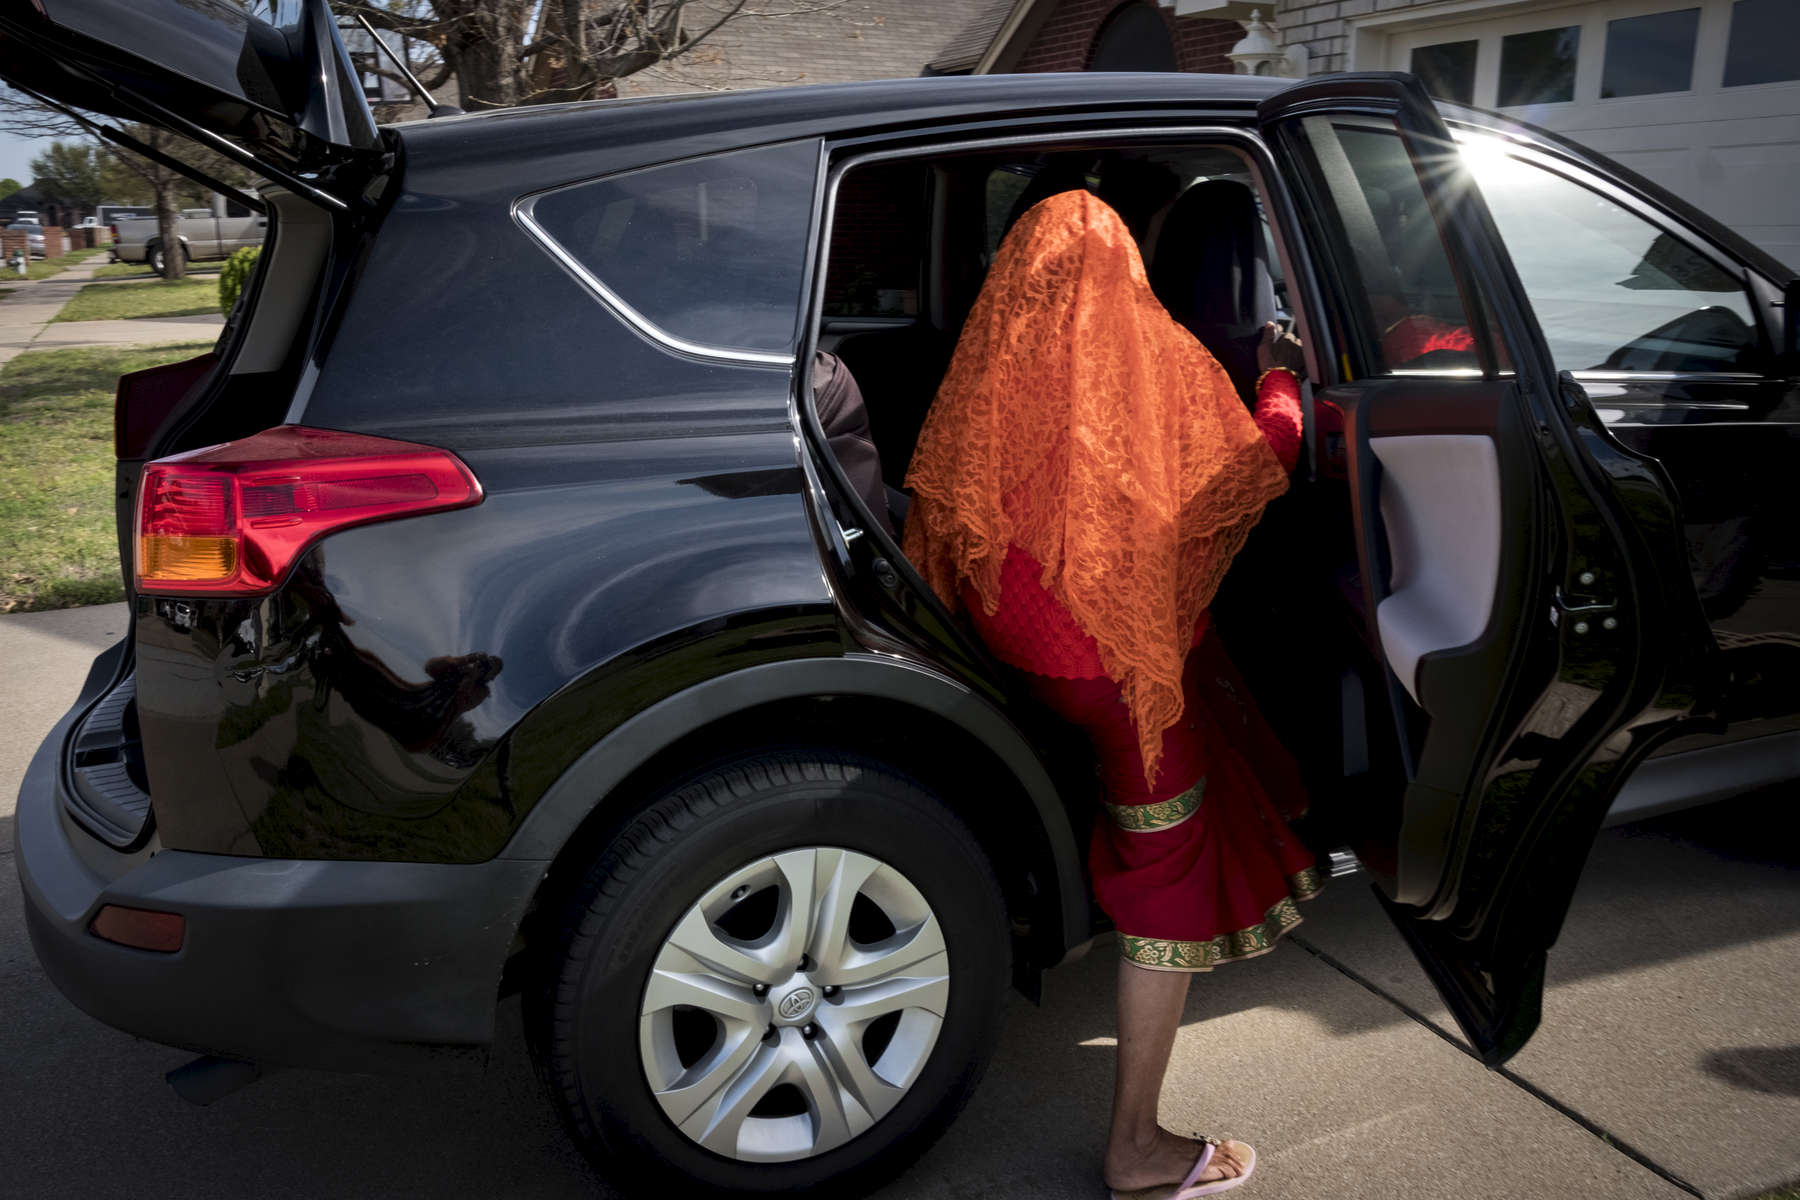 Radika Mainali monte dans la voiture familliale pour aller rendre visite à de la famille. Watauga, Etats-Unis, Mars 2018.